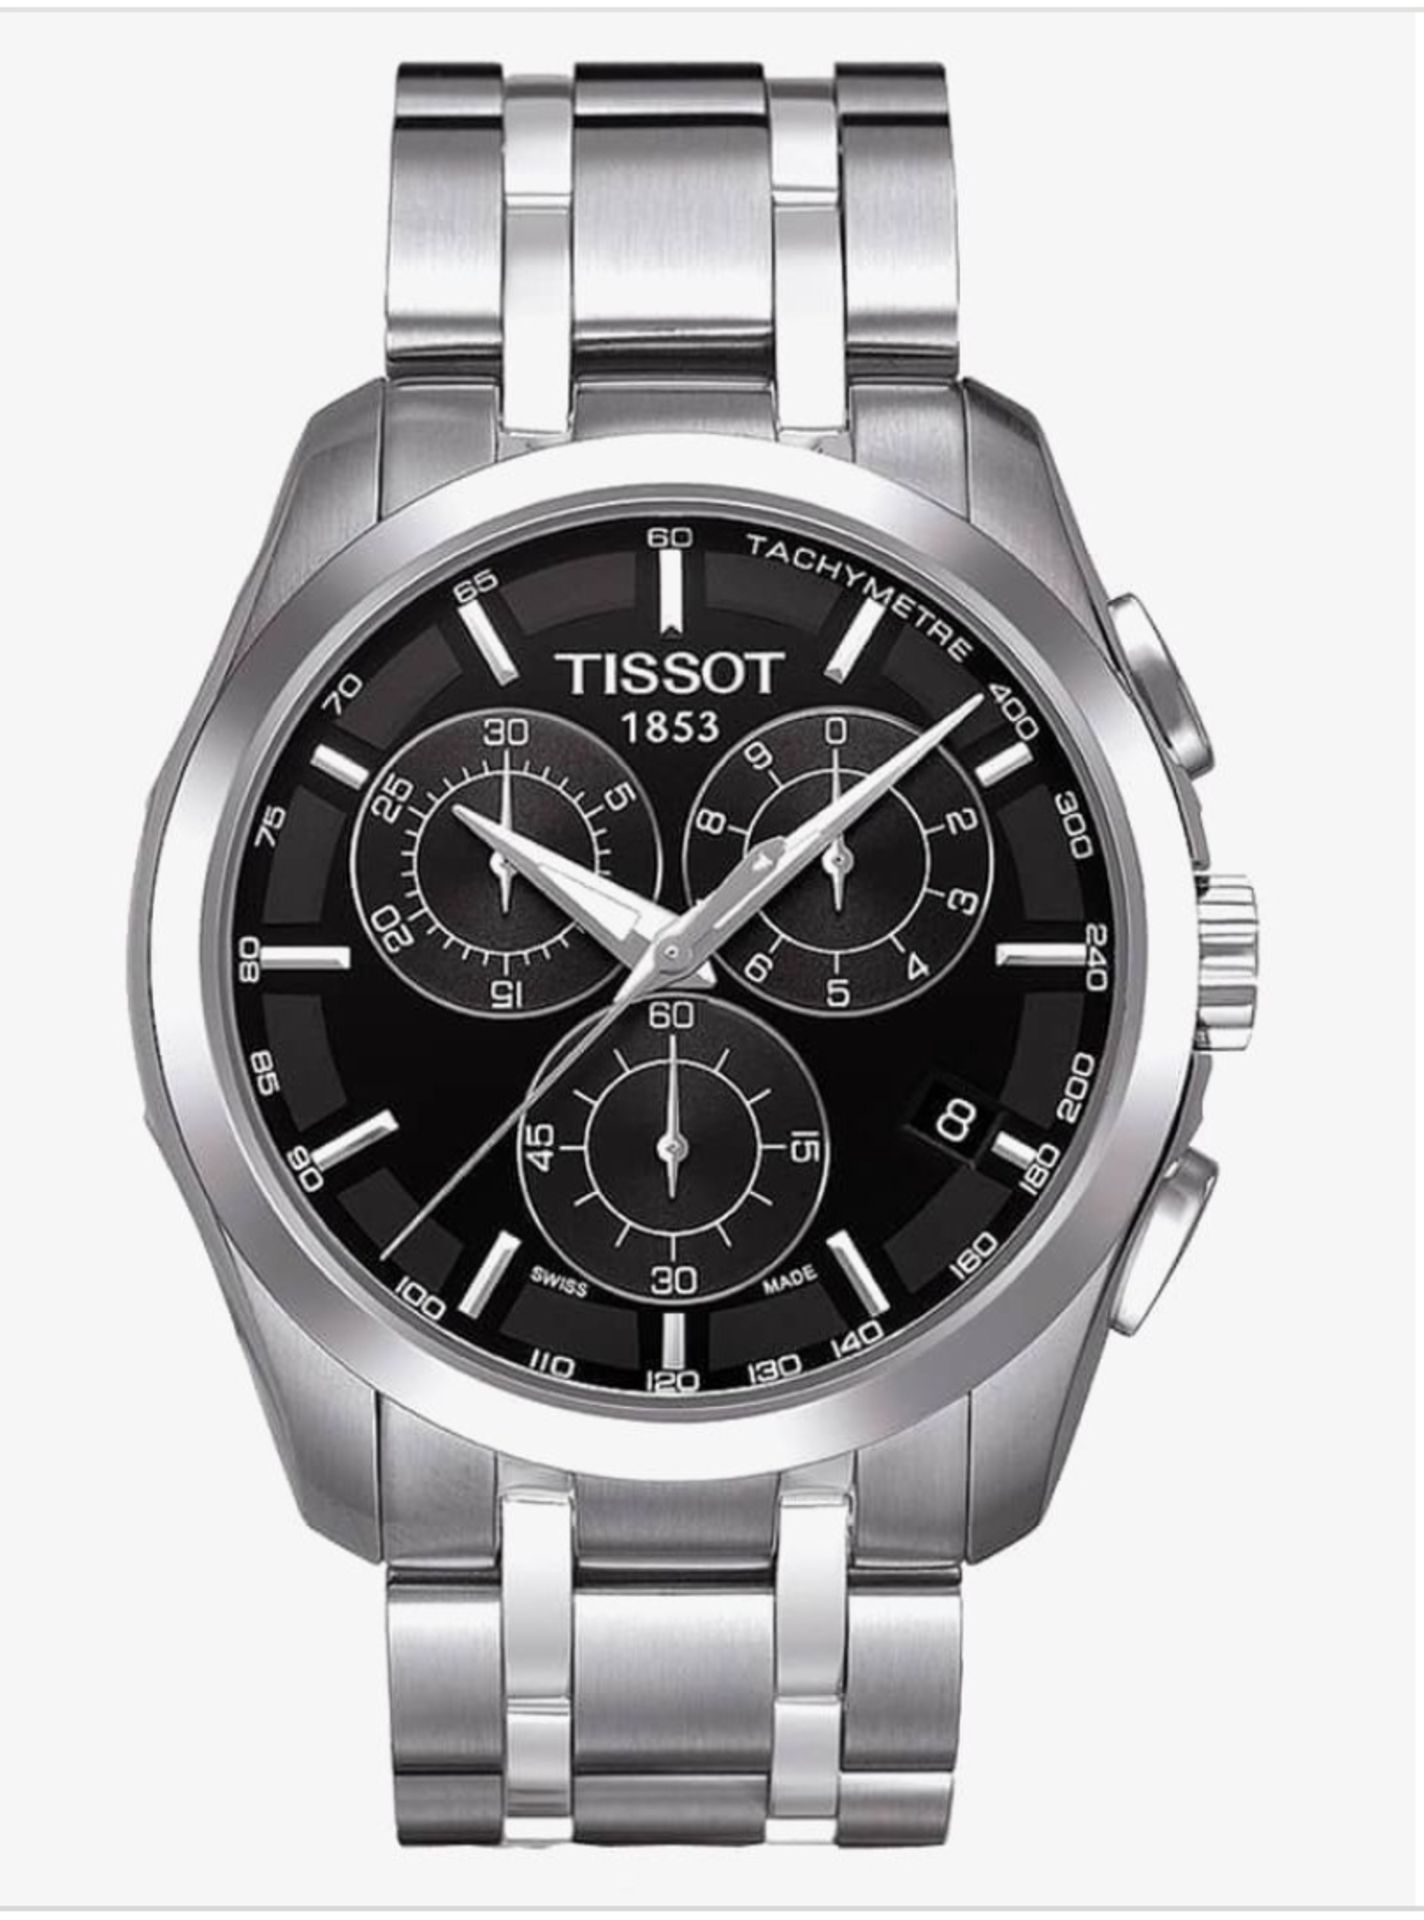 TISSOT T035.617.11.051.00 Men's Couturier Quartz Chronograph Watch